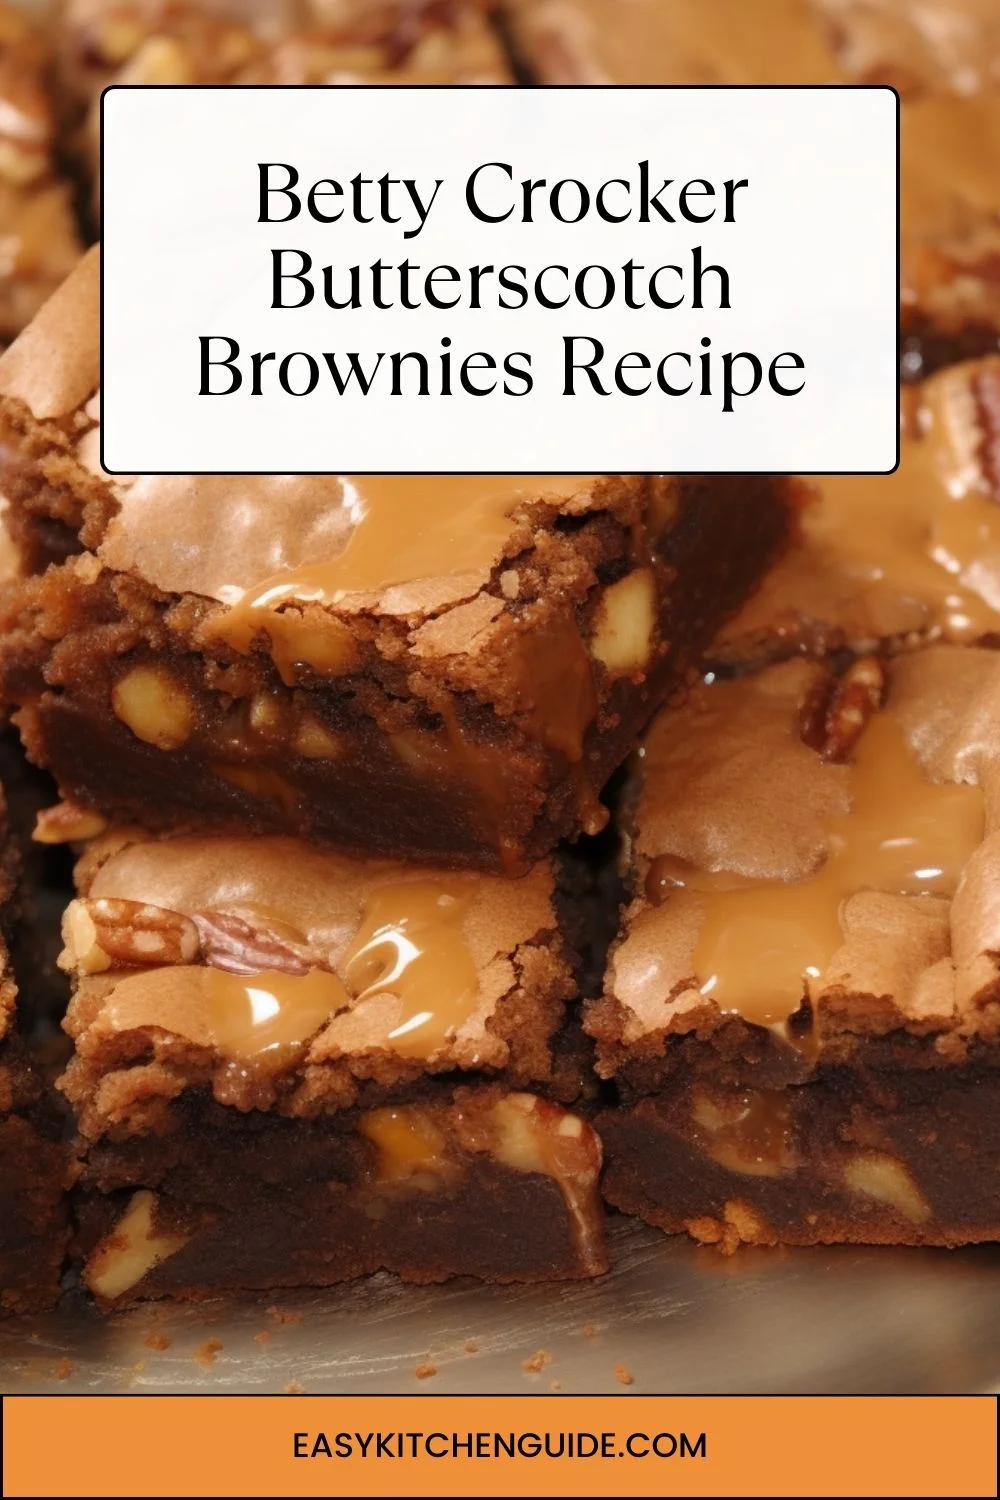 Betty Crocker Butterscotch Brownies Recipe